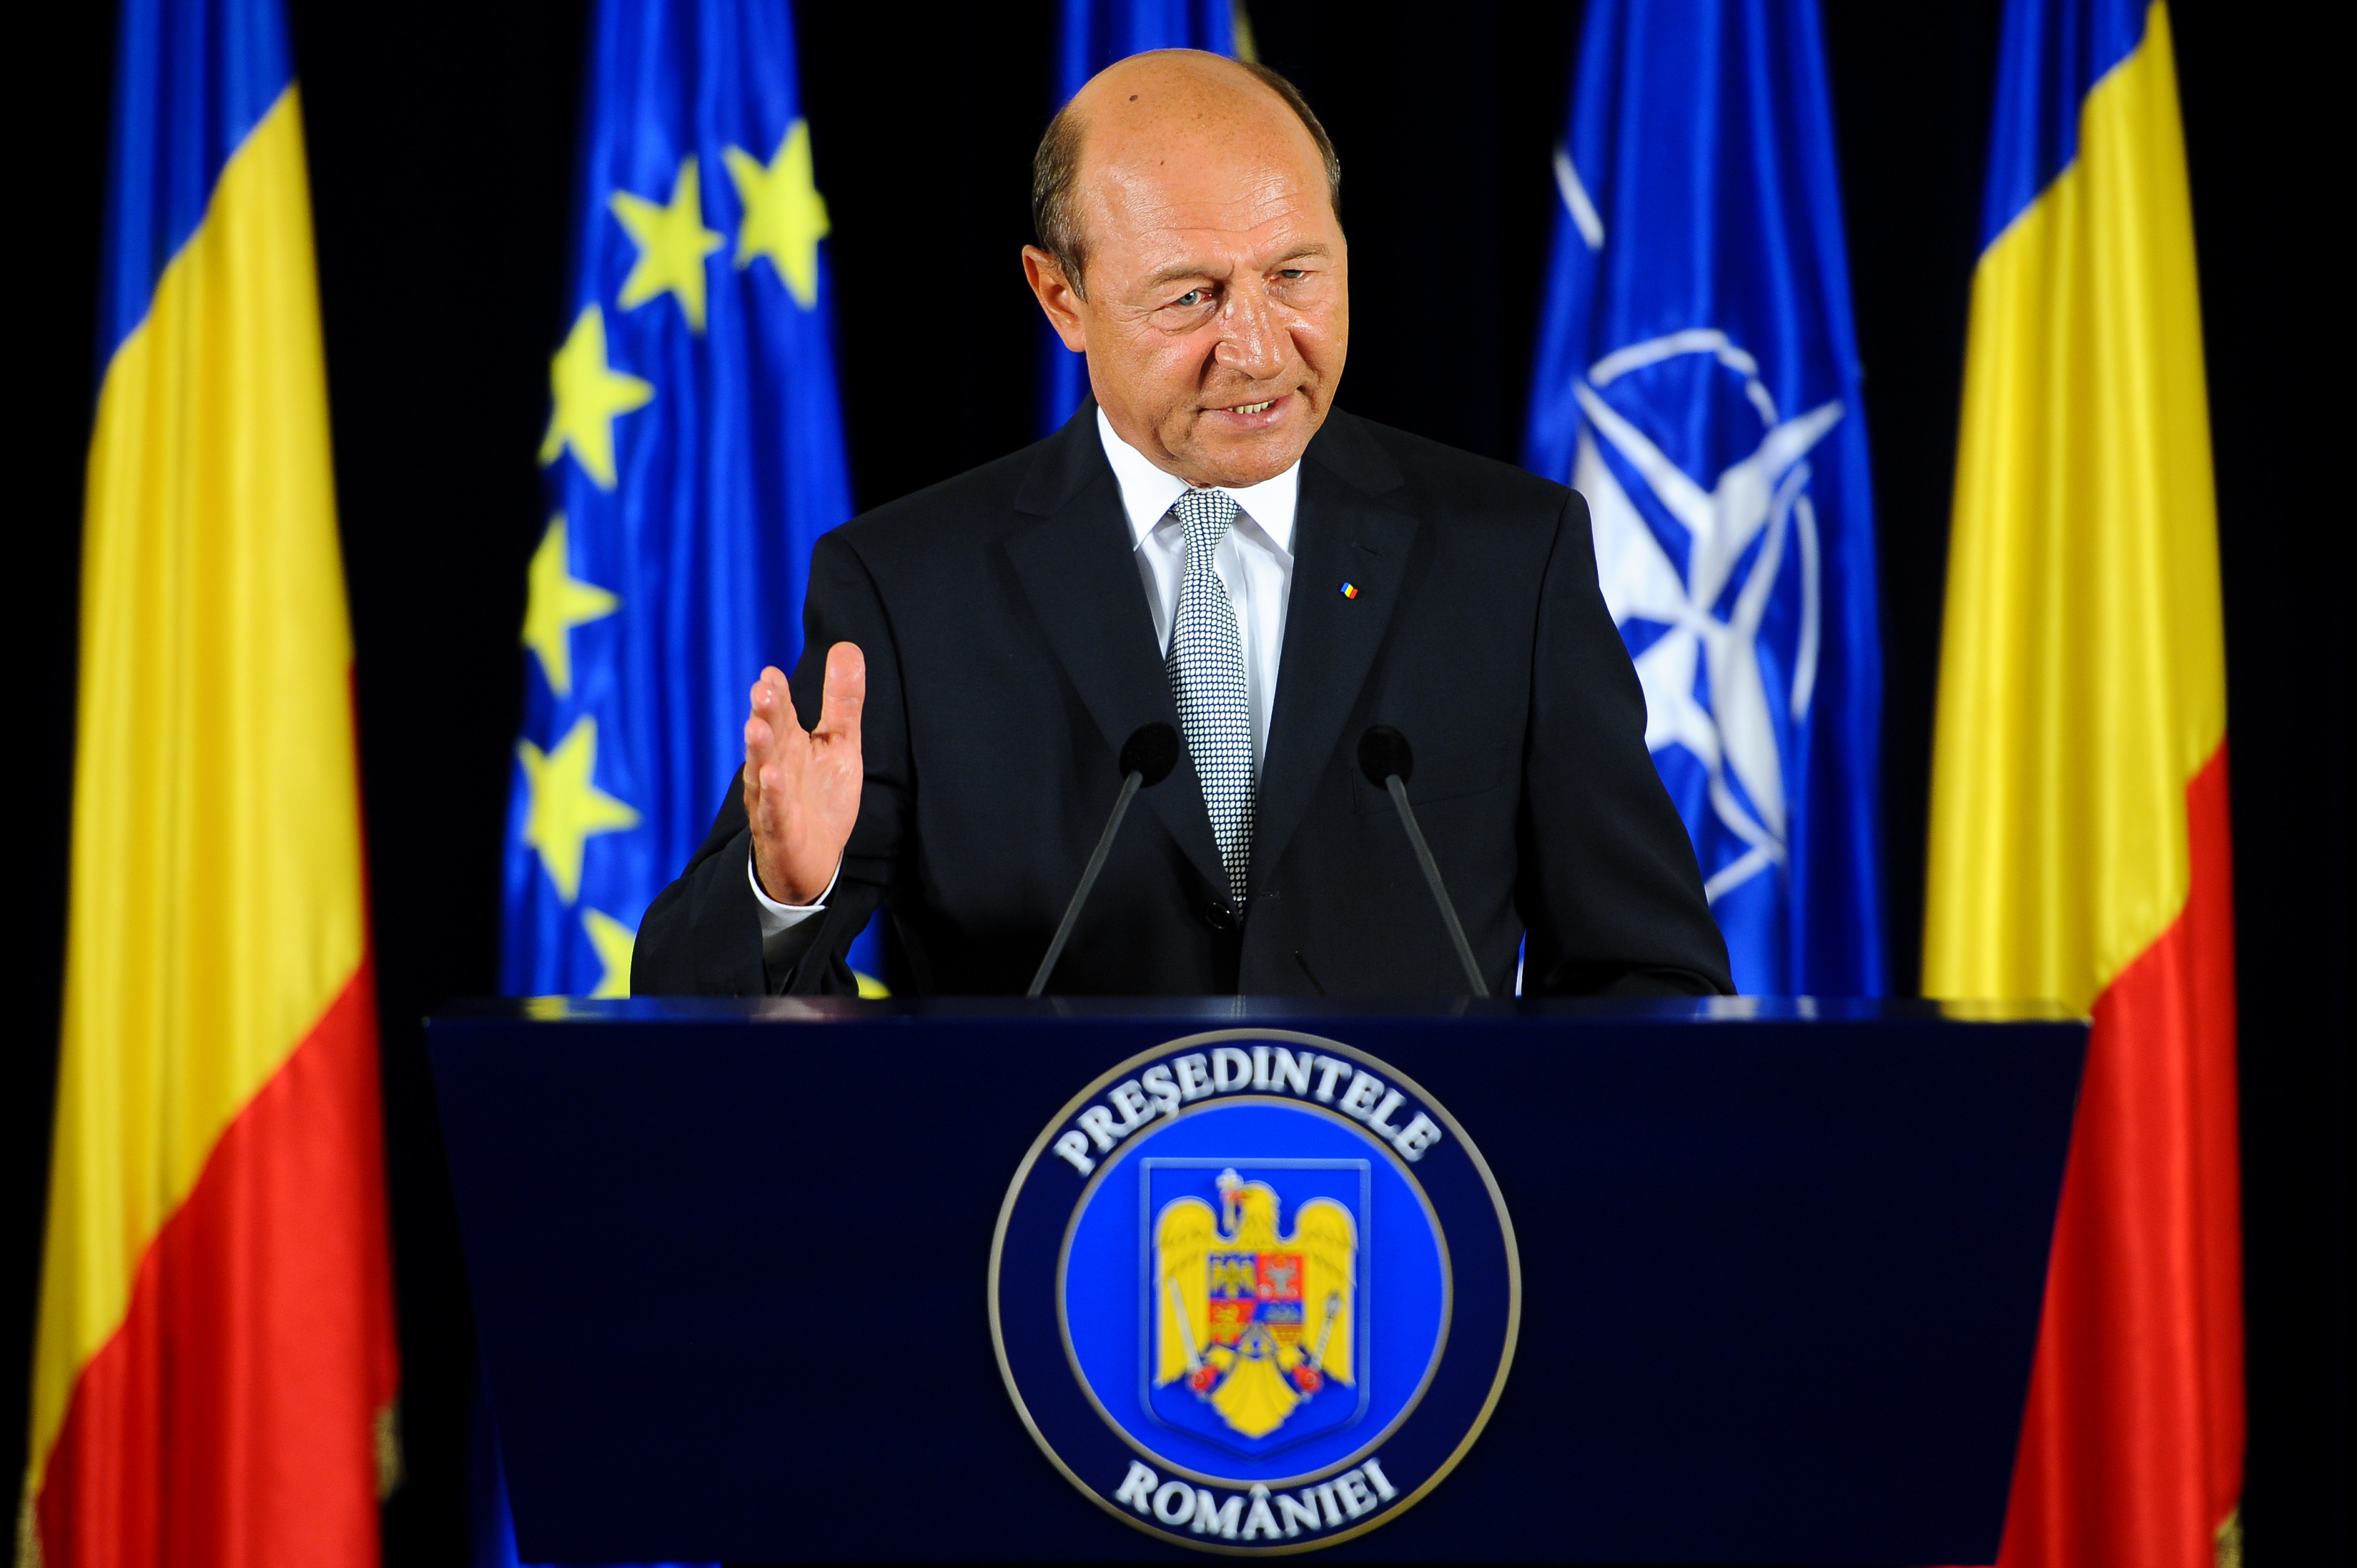 Băsescu i-a propus lui Van Rompuy intrarea României în Schengen în etape anul acesta